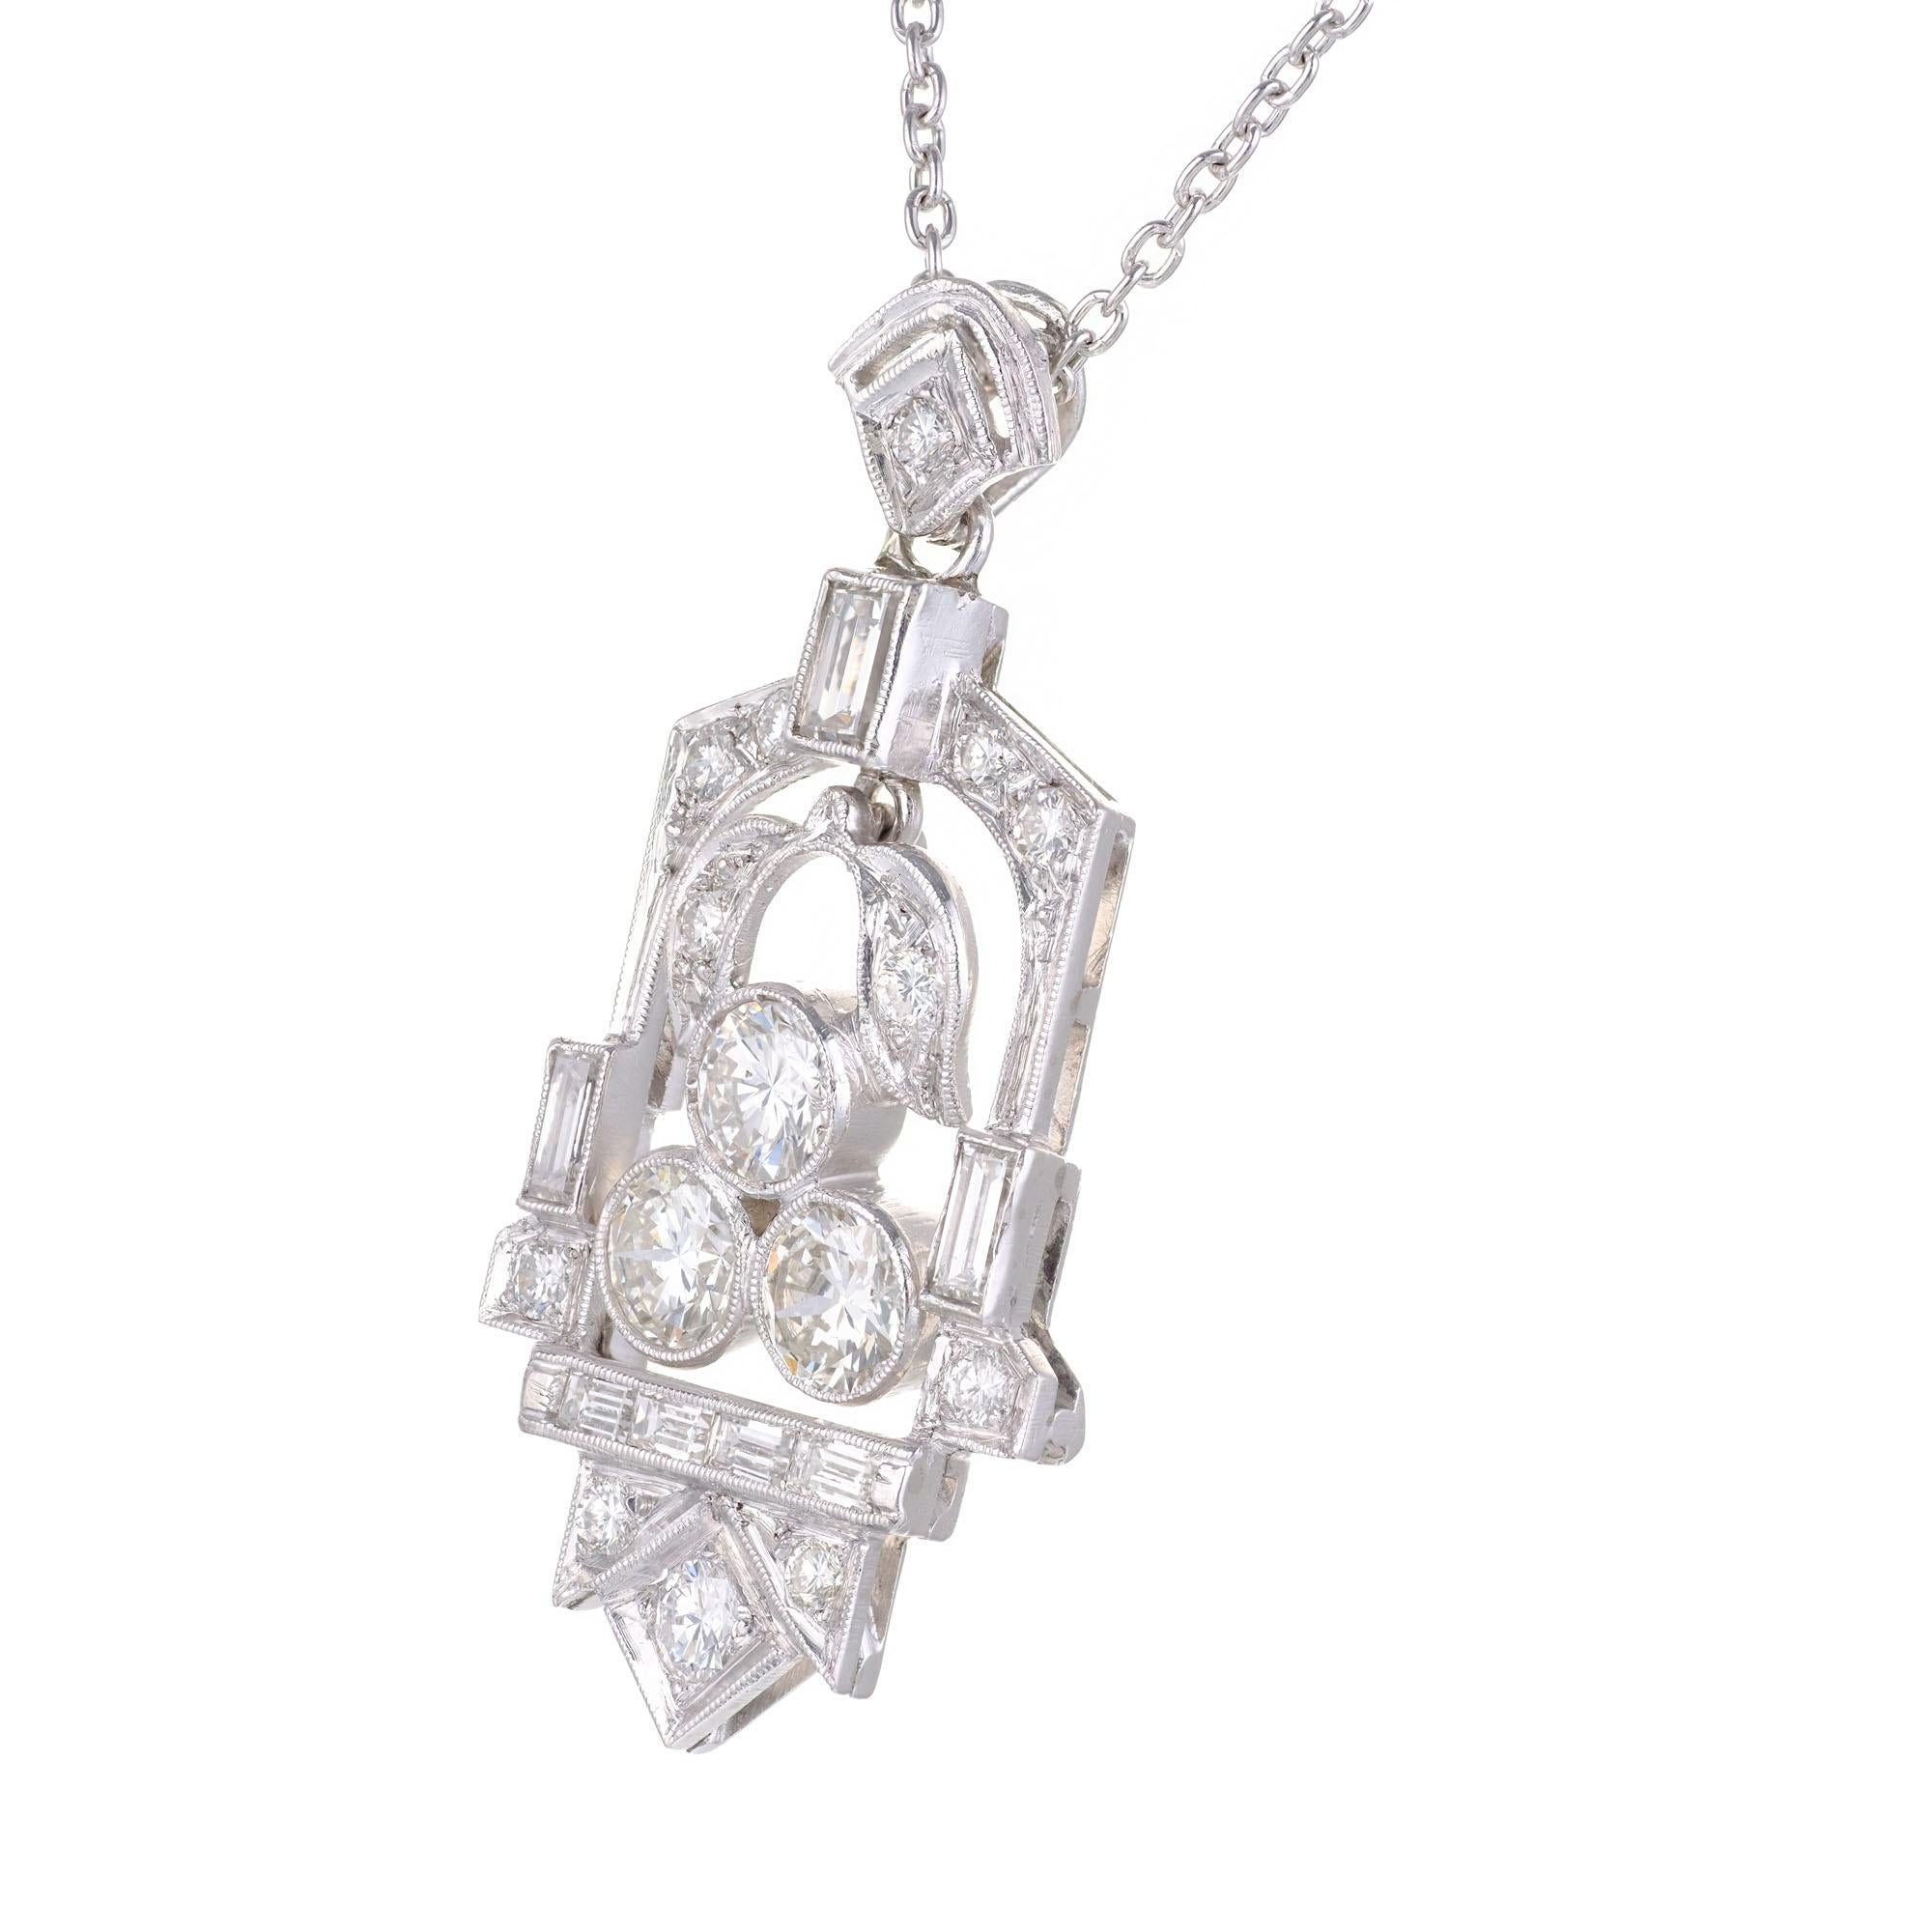 Collier pendentif en diamant Art Déco des années 1930. 22 diamants de taille transitioanl et baguette sur une chaîne de 16 pouces. 

12 diamants taille transitionnelle, H-I VS-SI environ 0,35 ct
7 baguettes droites, H VA environ 0,30 ct
3 diamants